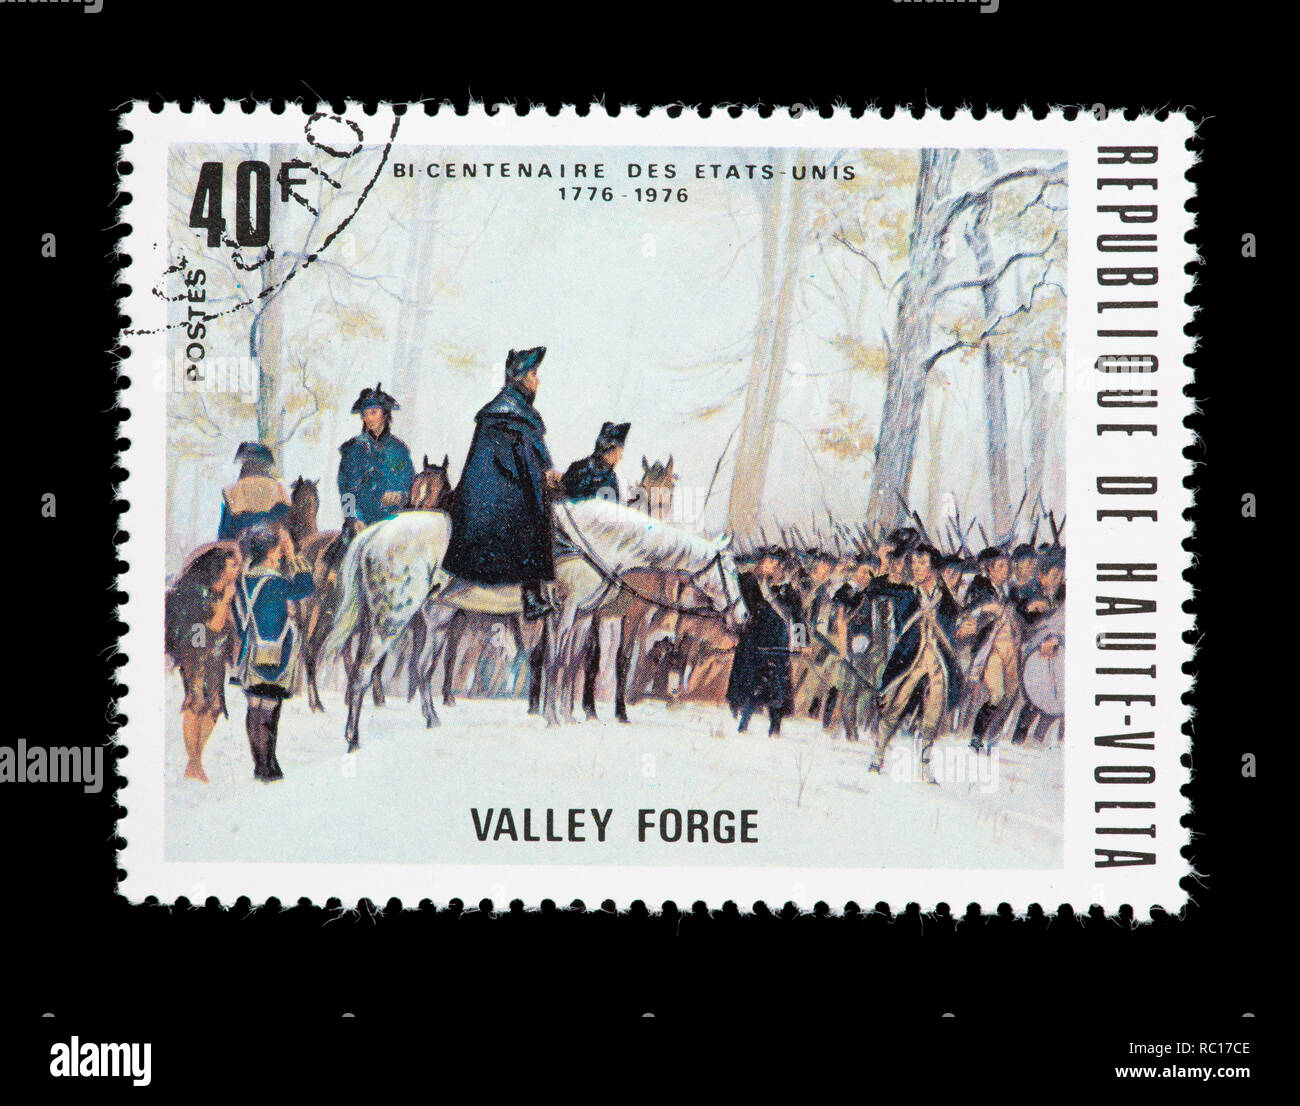 Briefmarke von Obervolta (Burkina Faso), Washington Truppen in Valley Forge, United States bicentennial überprüfen. Stockfoto